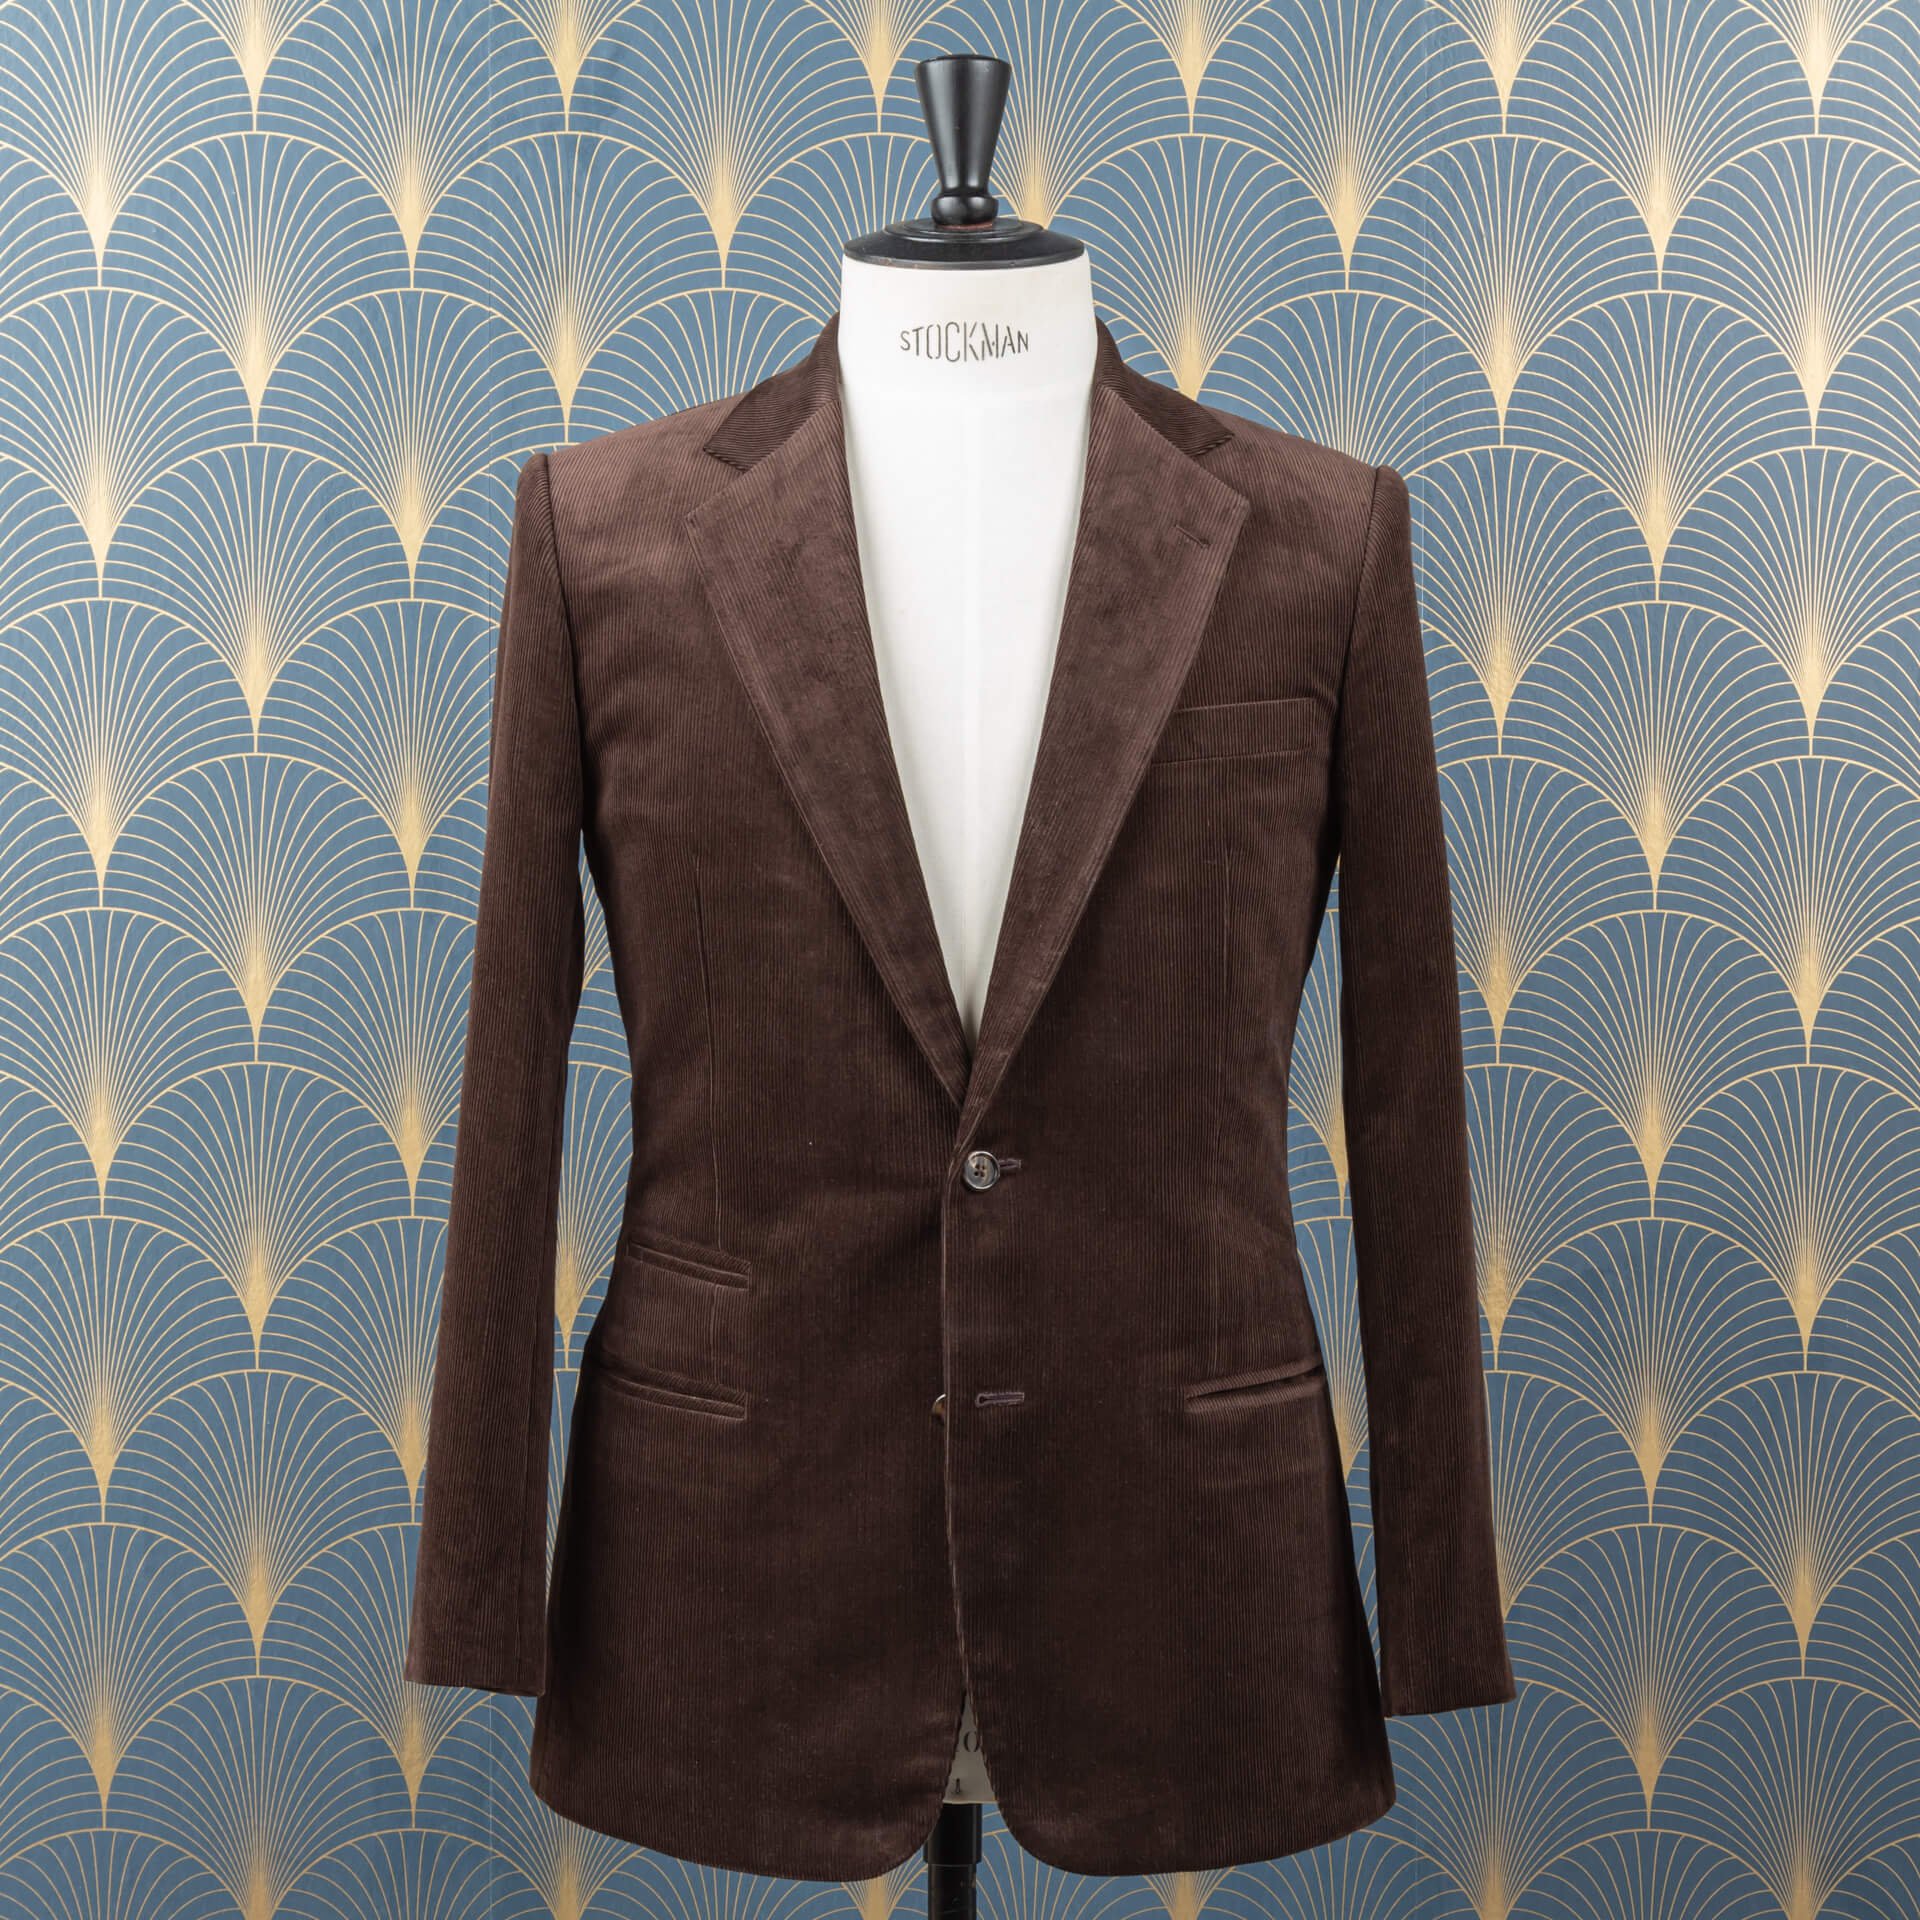 Corduroy Bespoke Suit 1.jpg